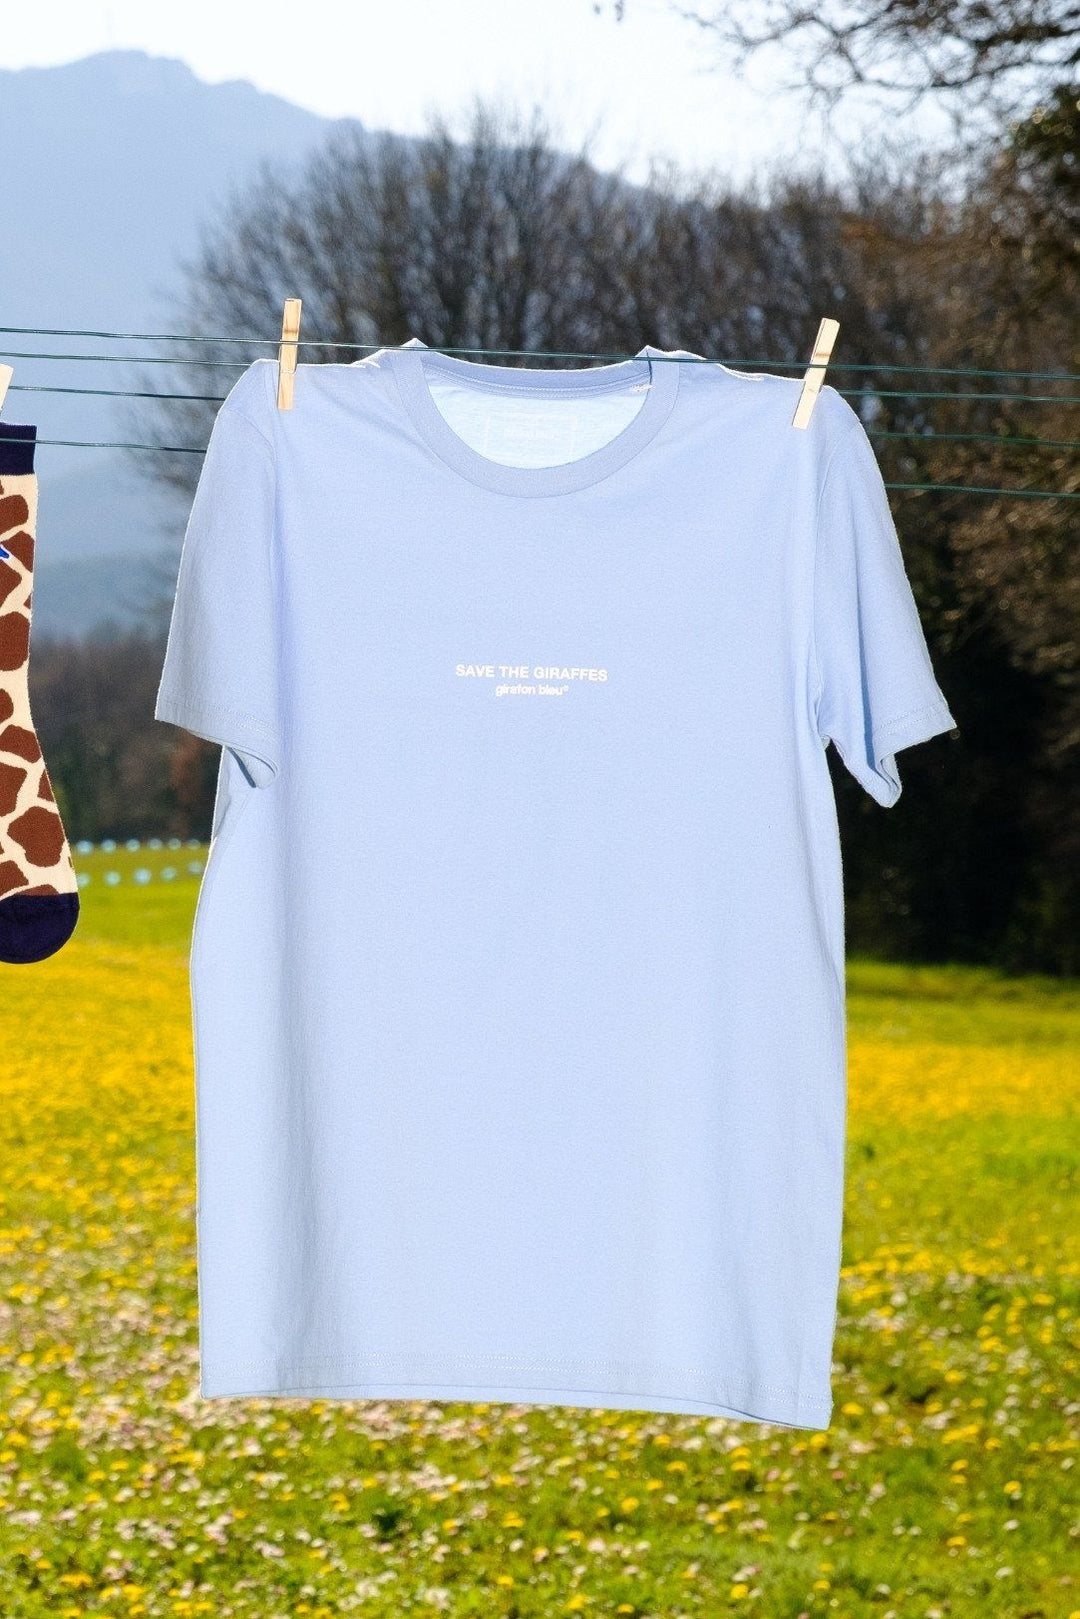 T-shirt coton biologique - Save The Giraffes - Bleu ciel - fairytale